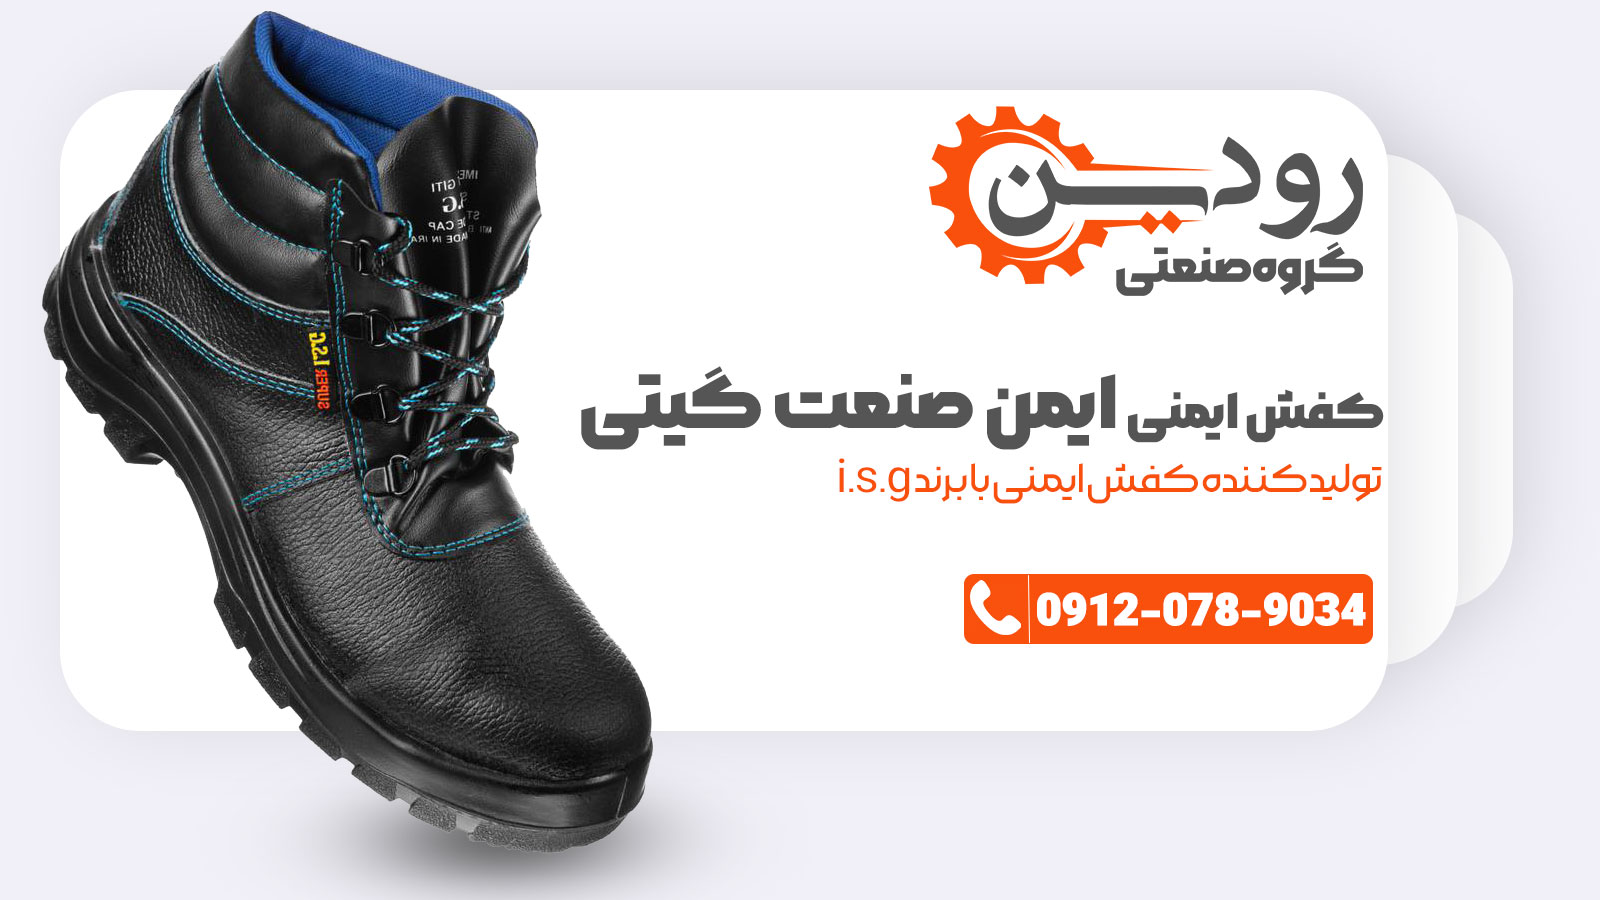 فروش کفش ایمنی ایمن صنعت گیتی با برند خاص isg صورت میگیرد.